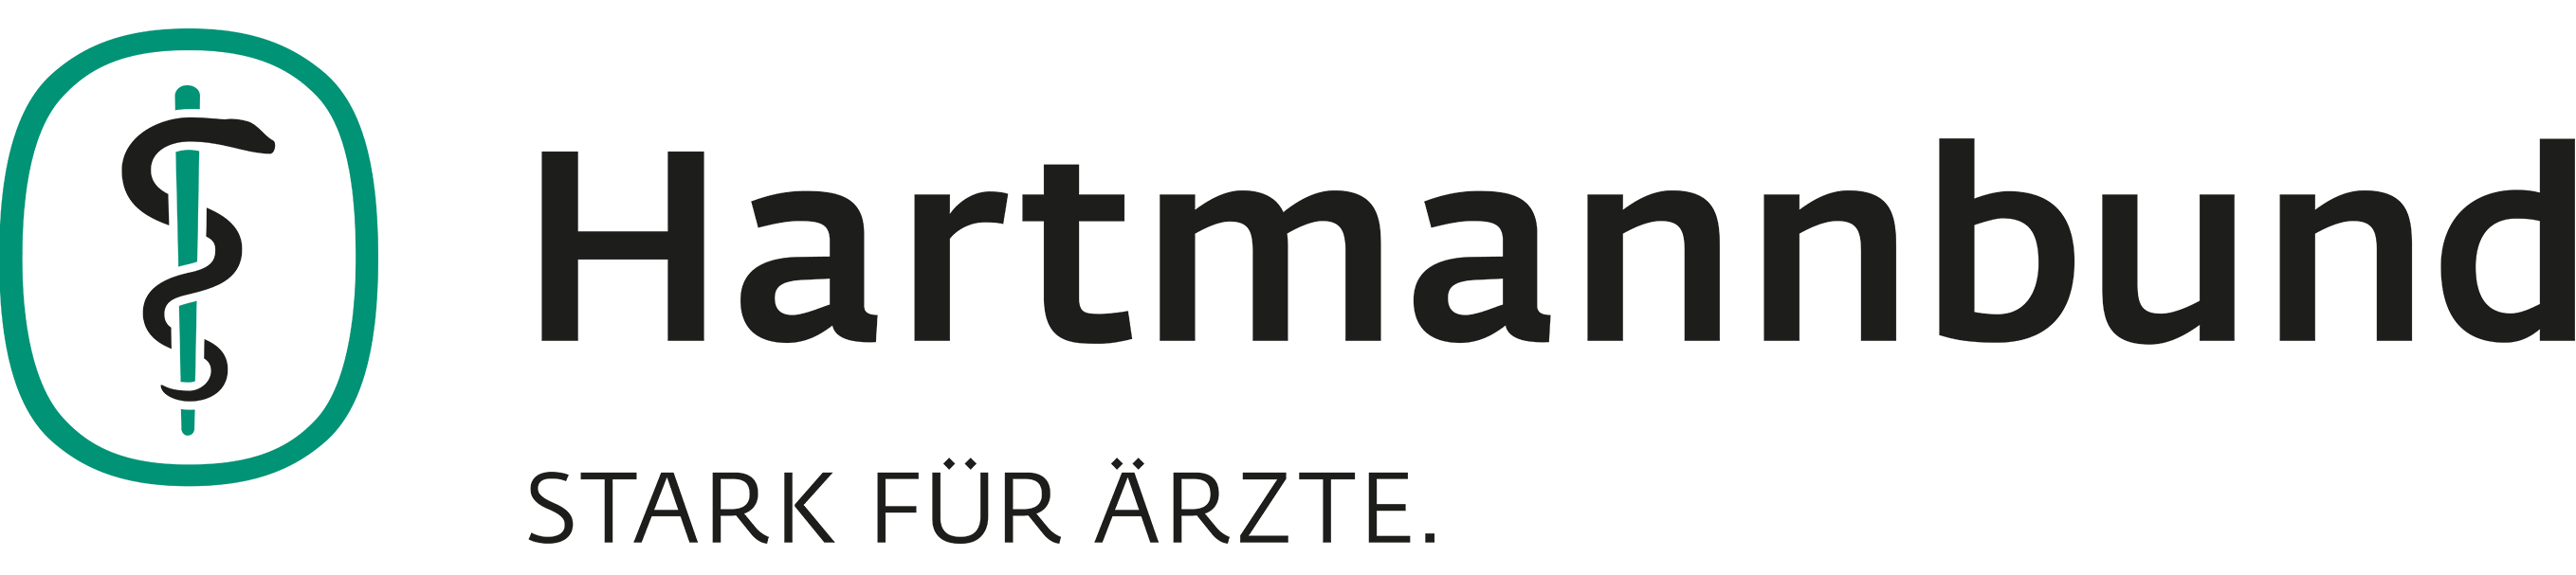 Logo Hartmannbund